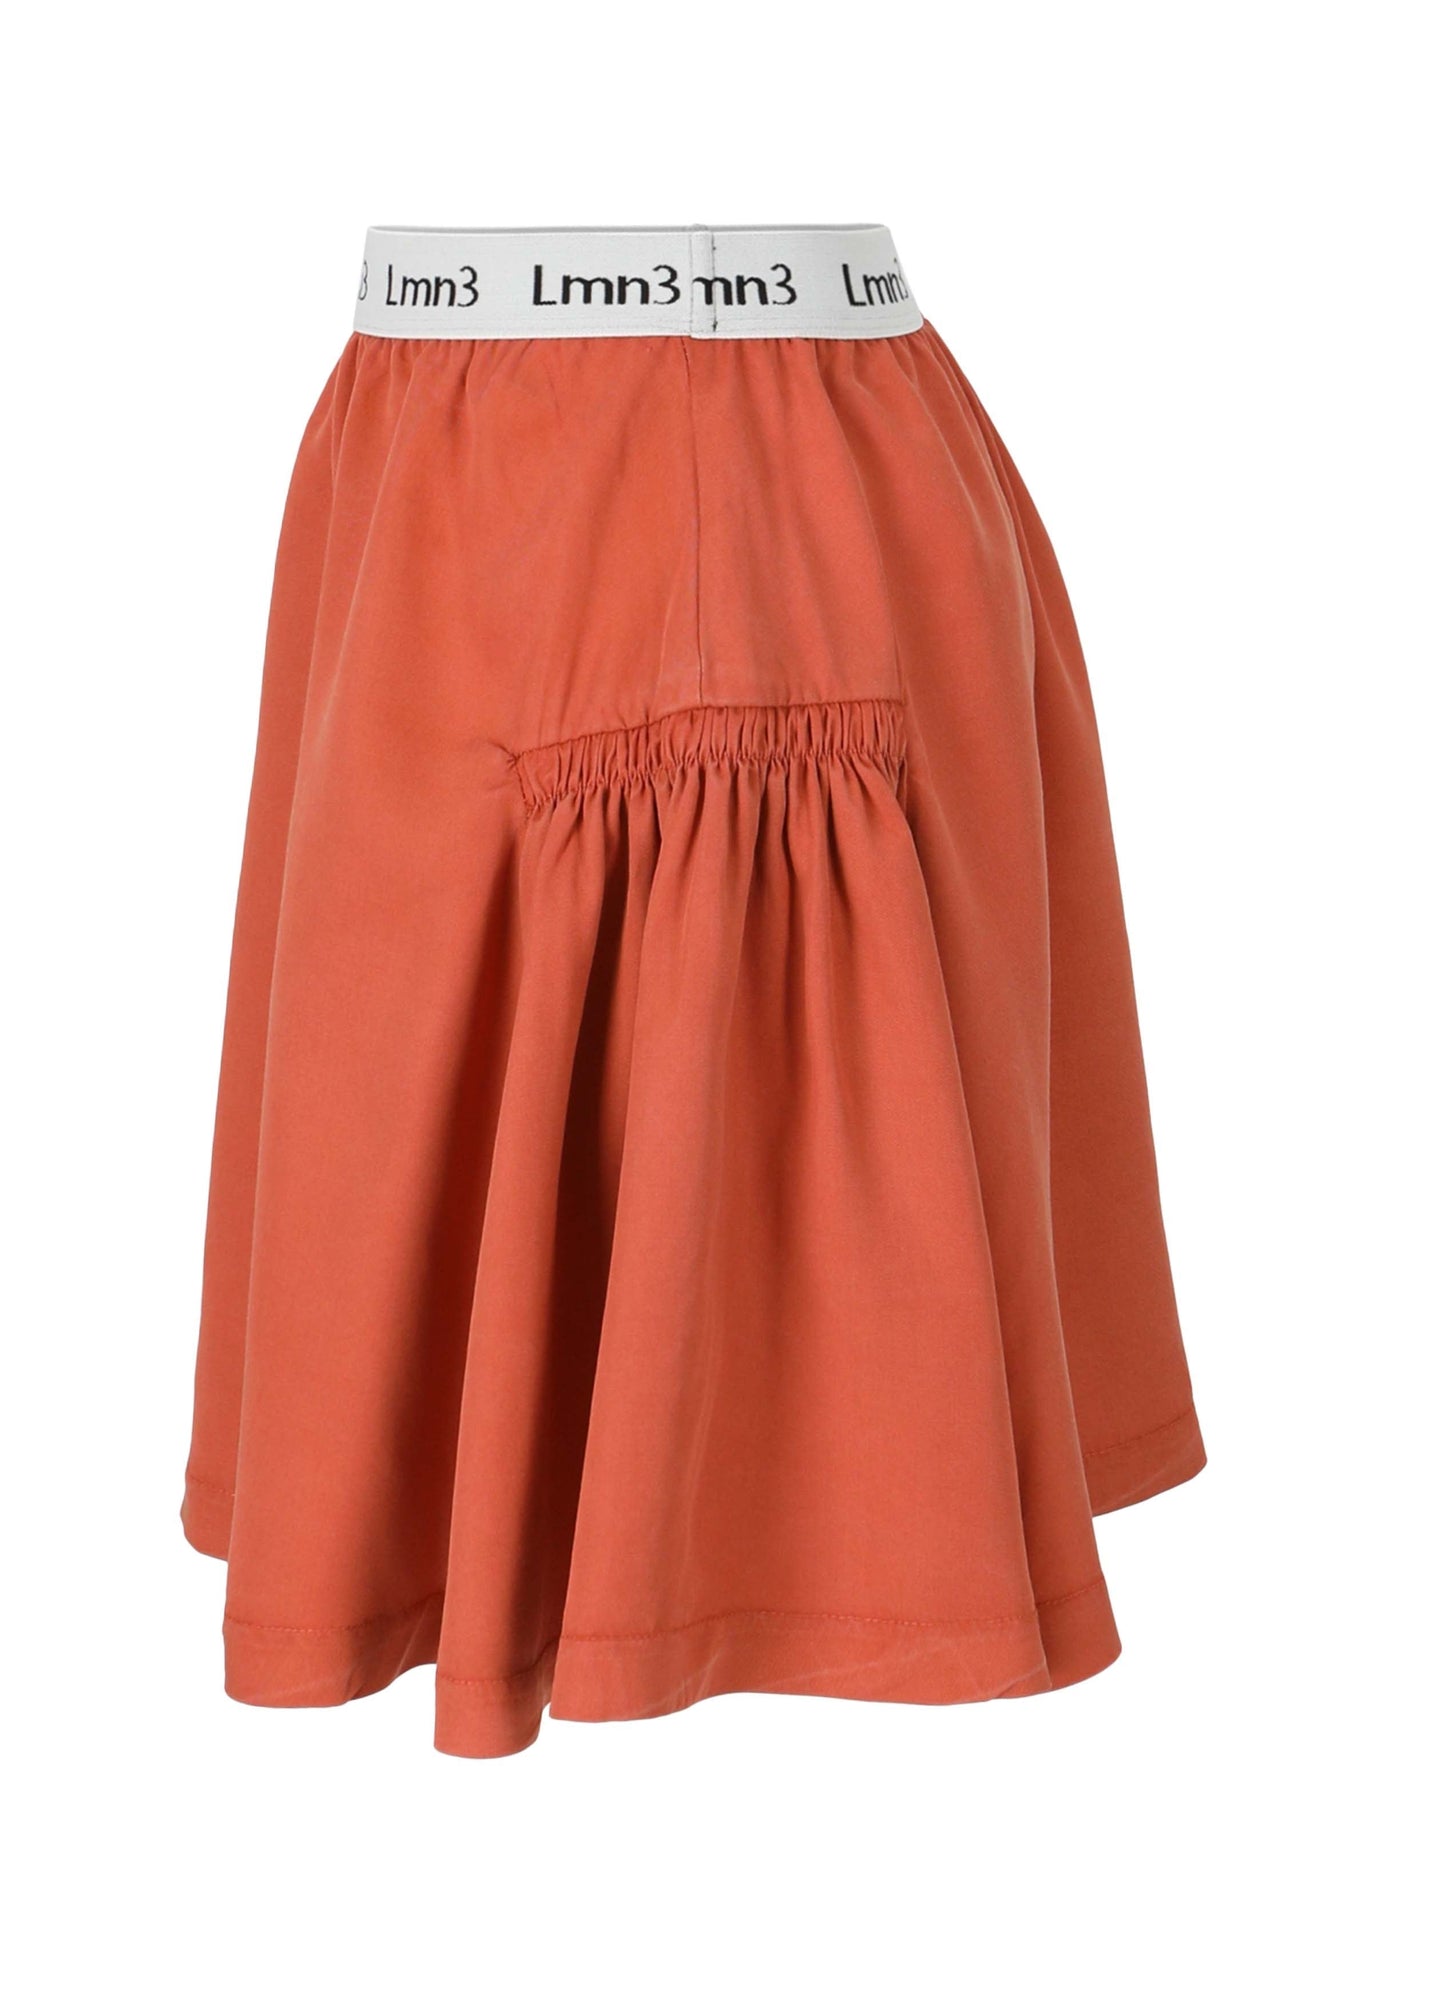 Skirt No. 8 - Caramel Skirts LMN3 